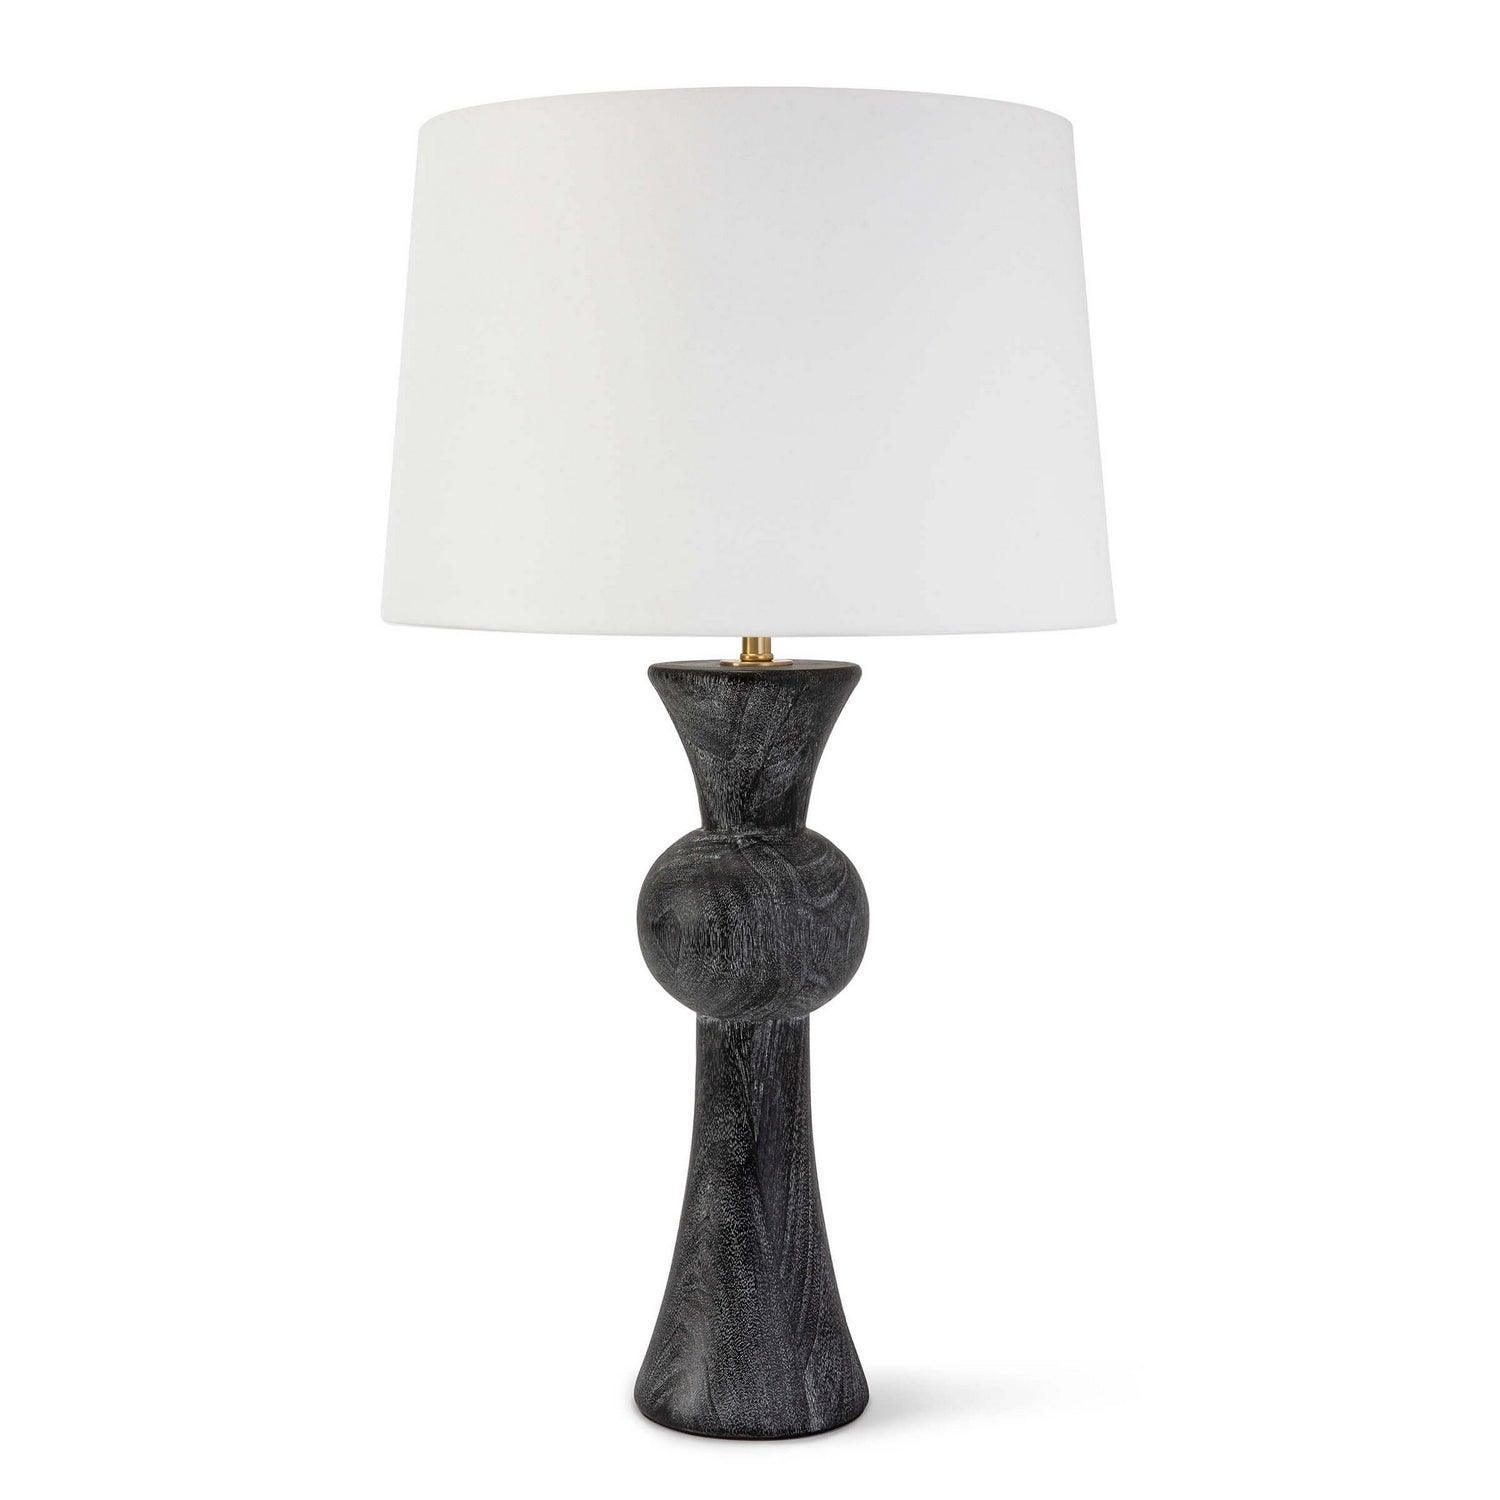 Regina Andrew - Vaughn Table Lamp - 13-1426 | Montreal Lighting & Hardware